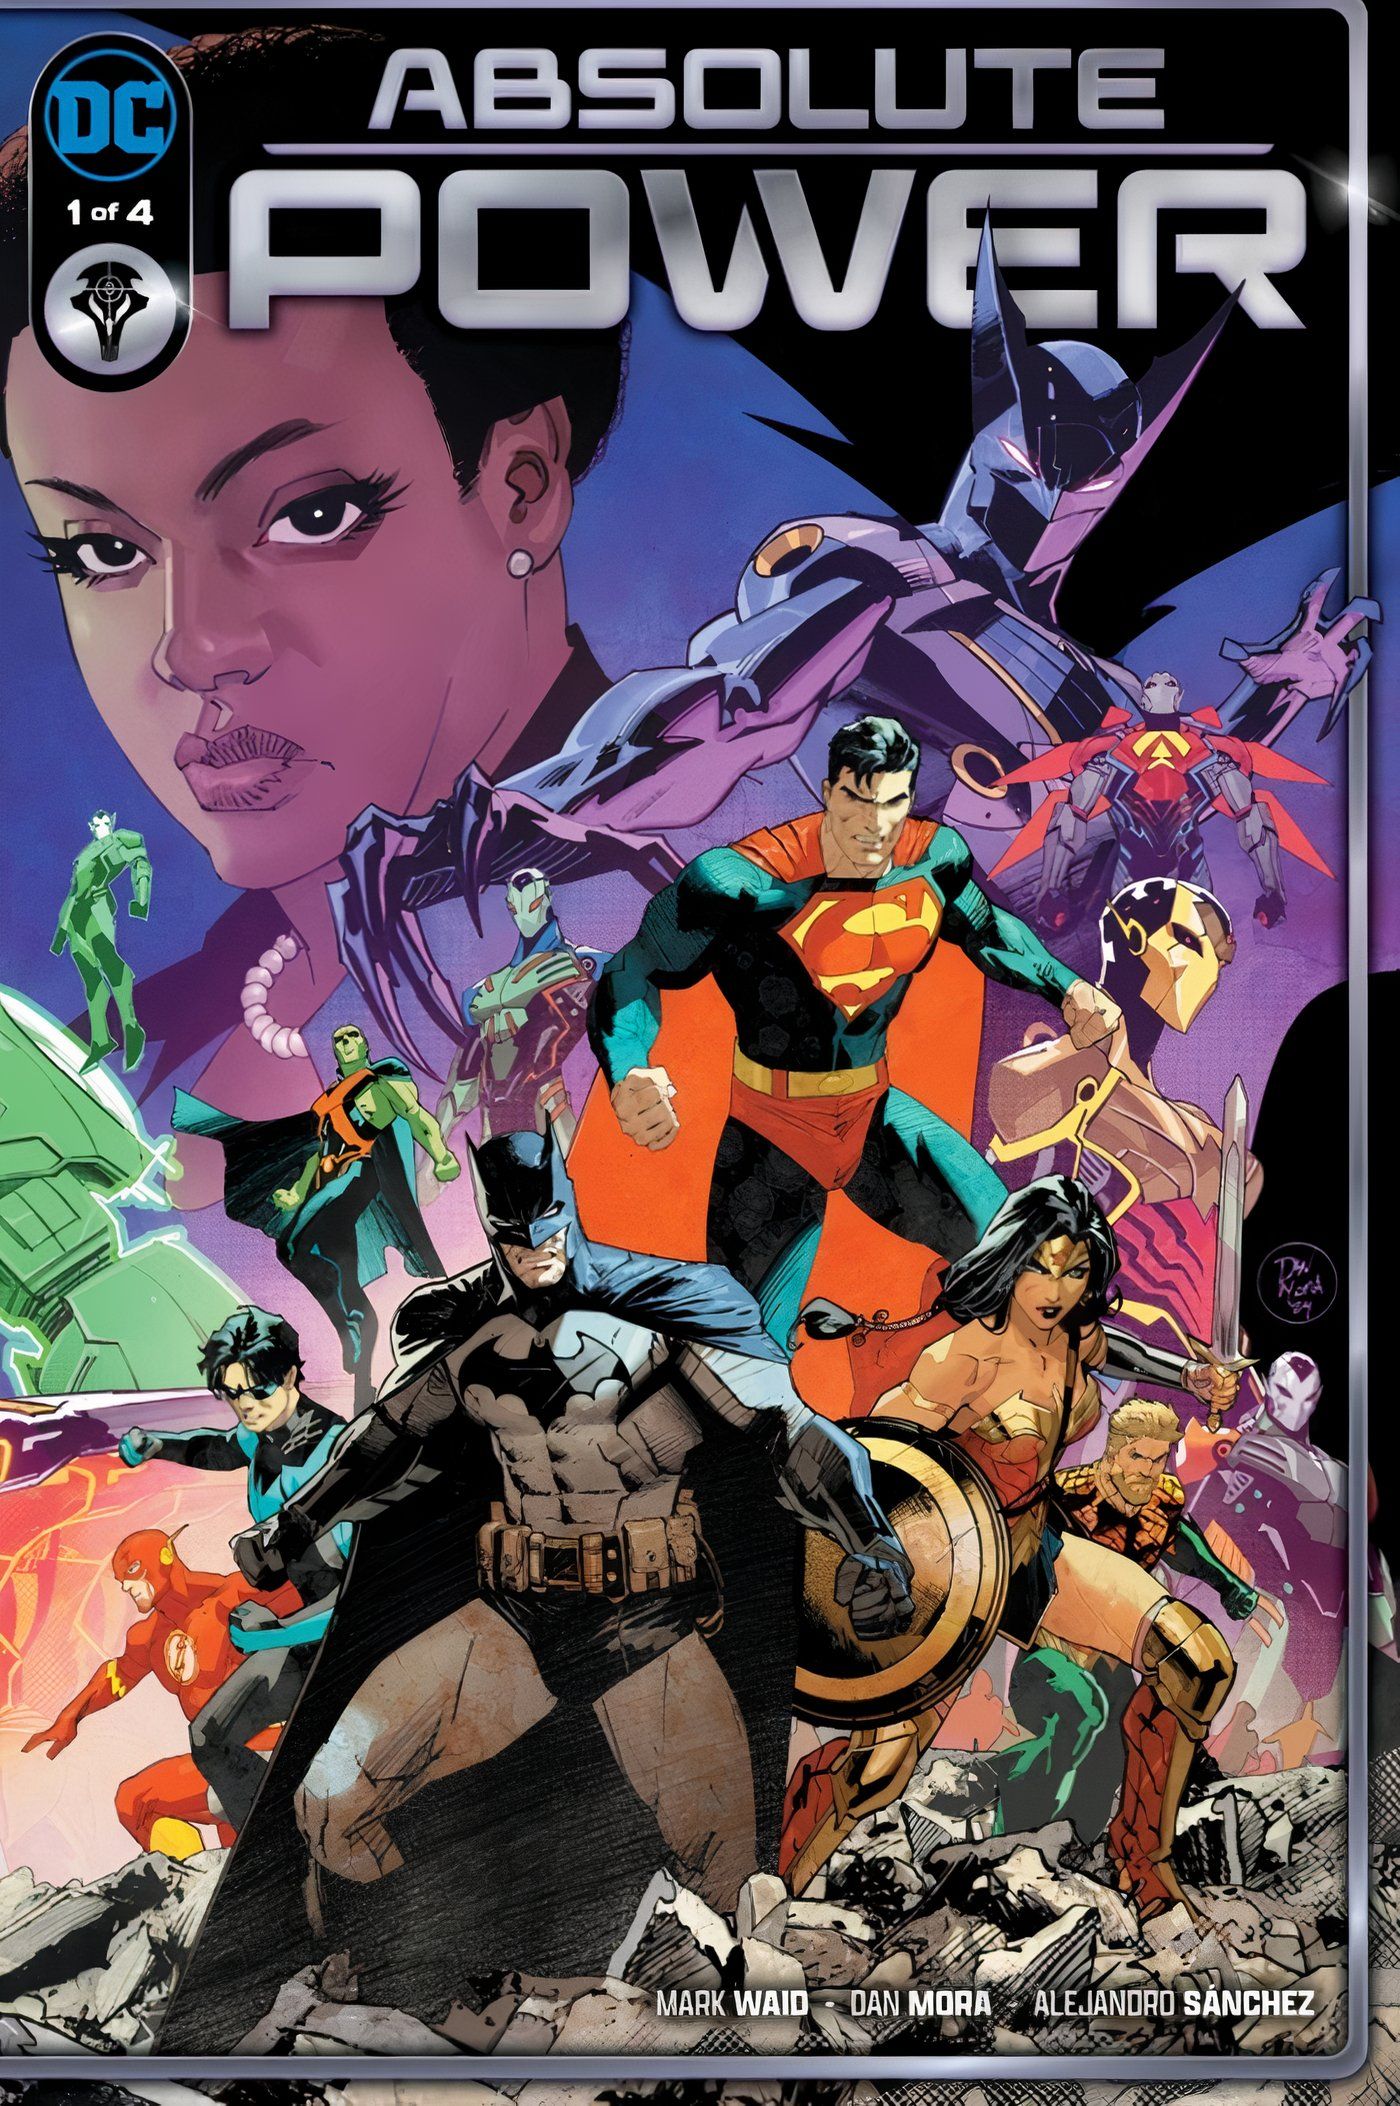 Capa finalizada de Absolute Power 1 Liga da Justiça e Waller DC